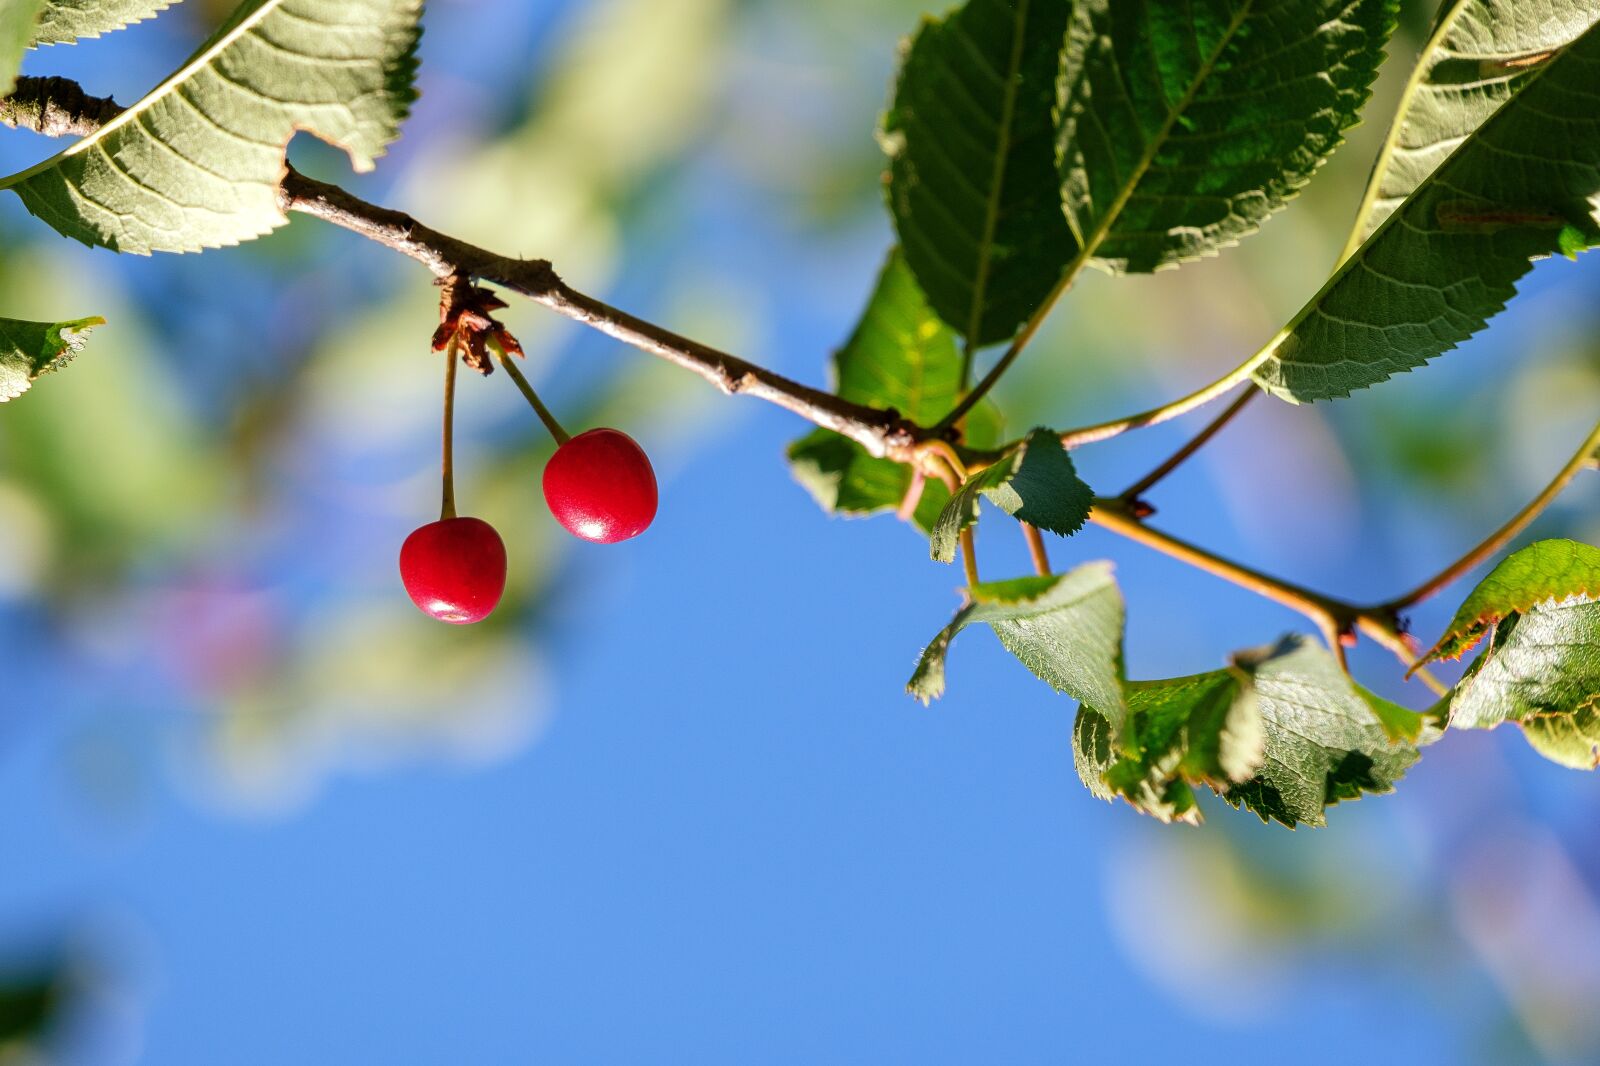 Fujifilm X-T2 sample photo. Cherries, wild cherries, fruit photography